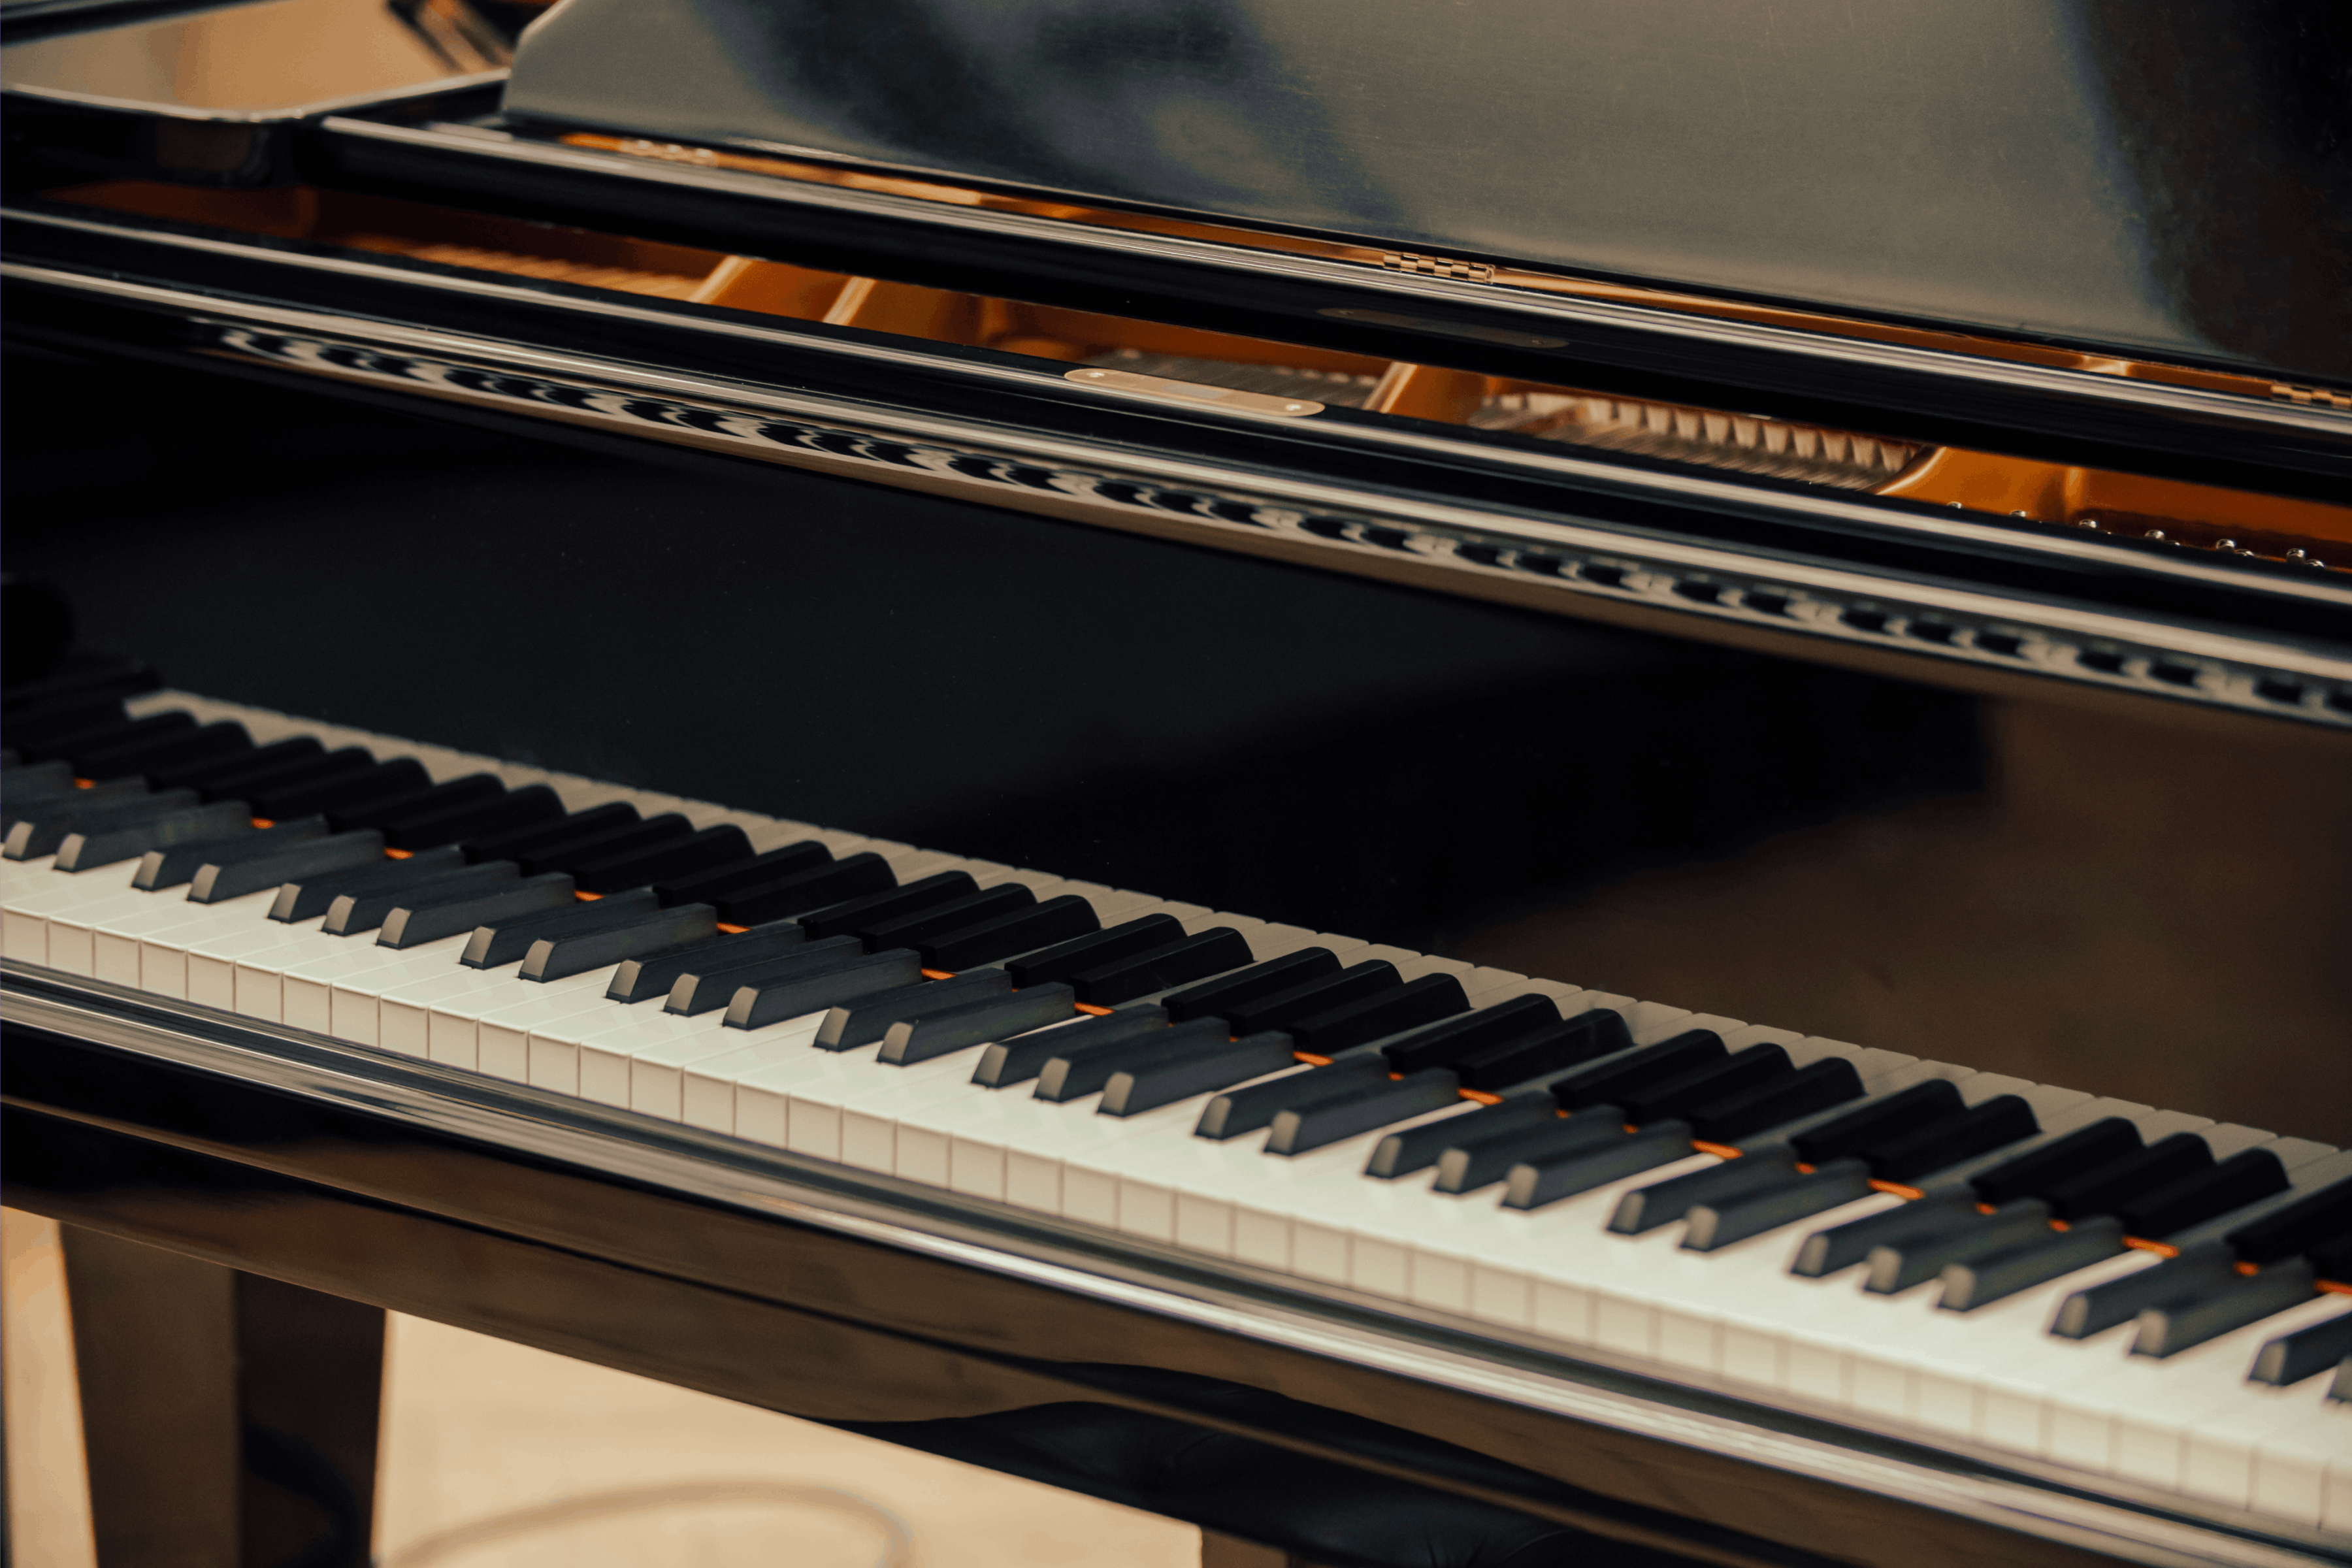 The piano keys